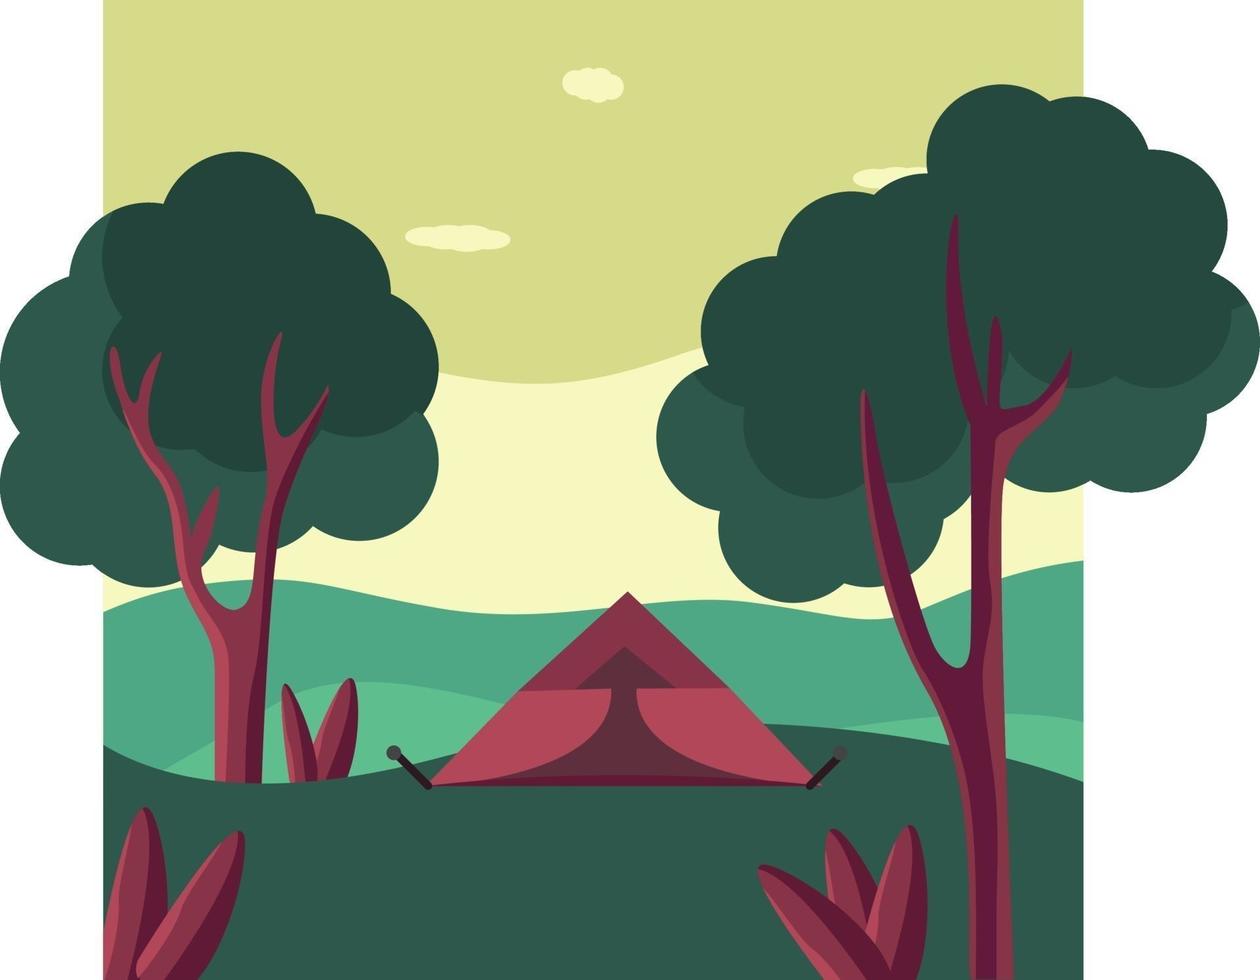 Camping im Wald, Illustration, Vektor auf weißem Hintergrund.